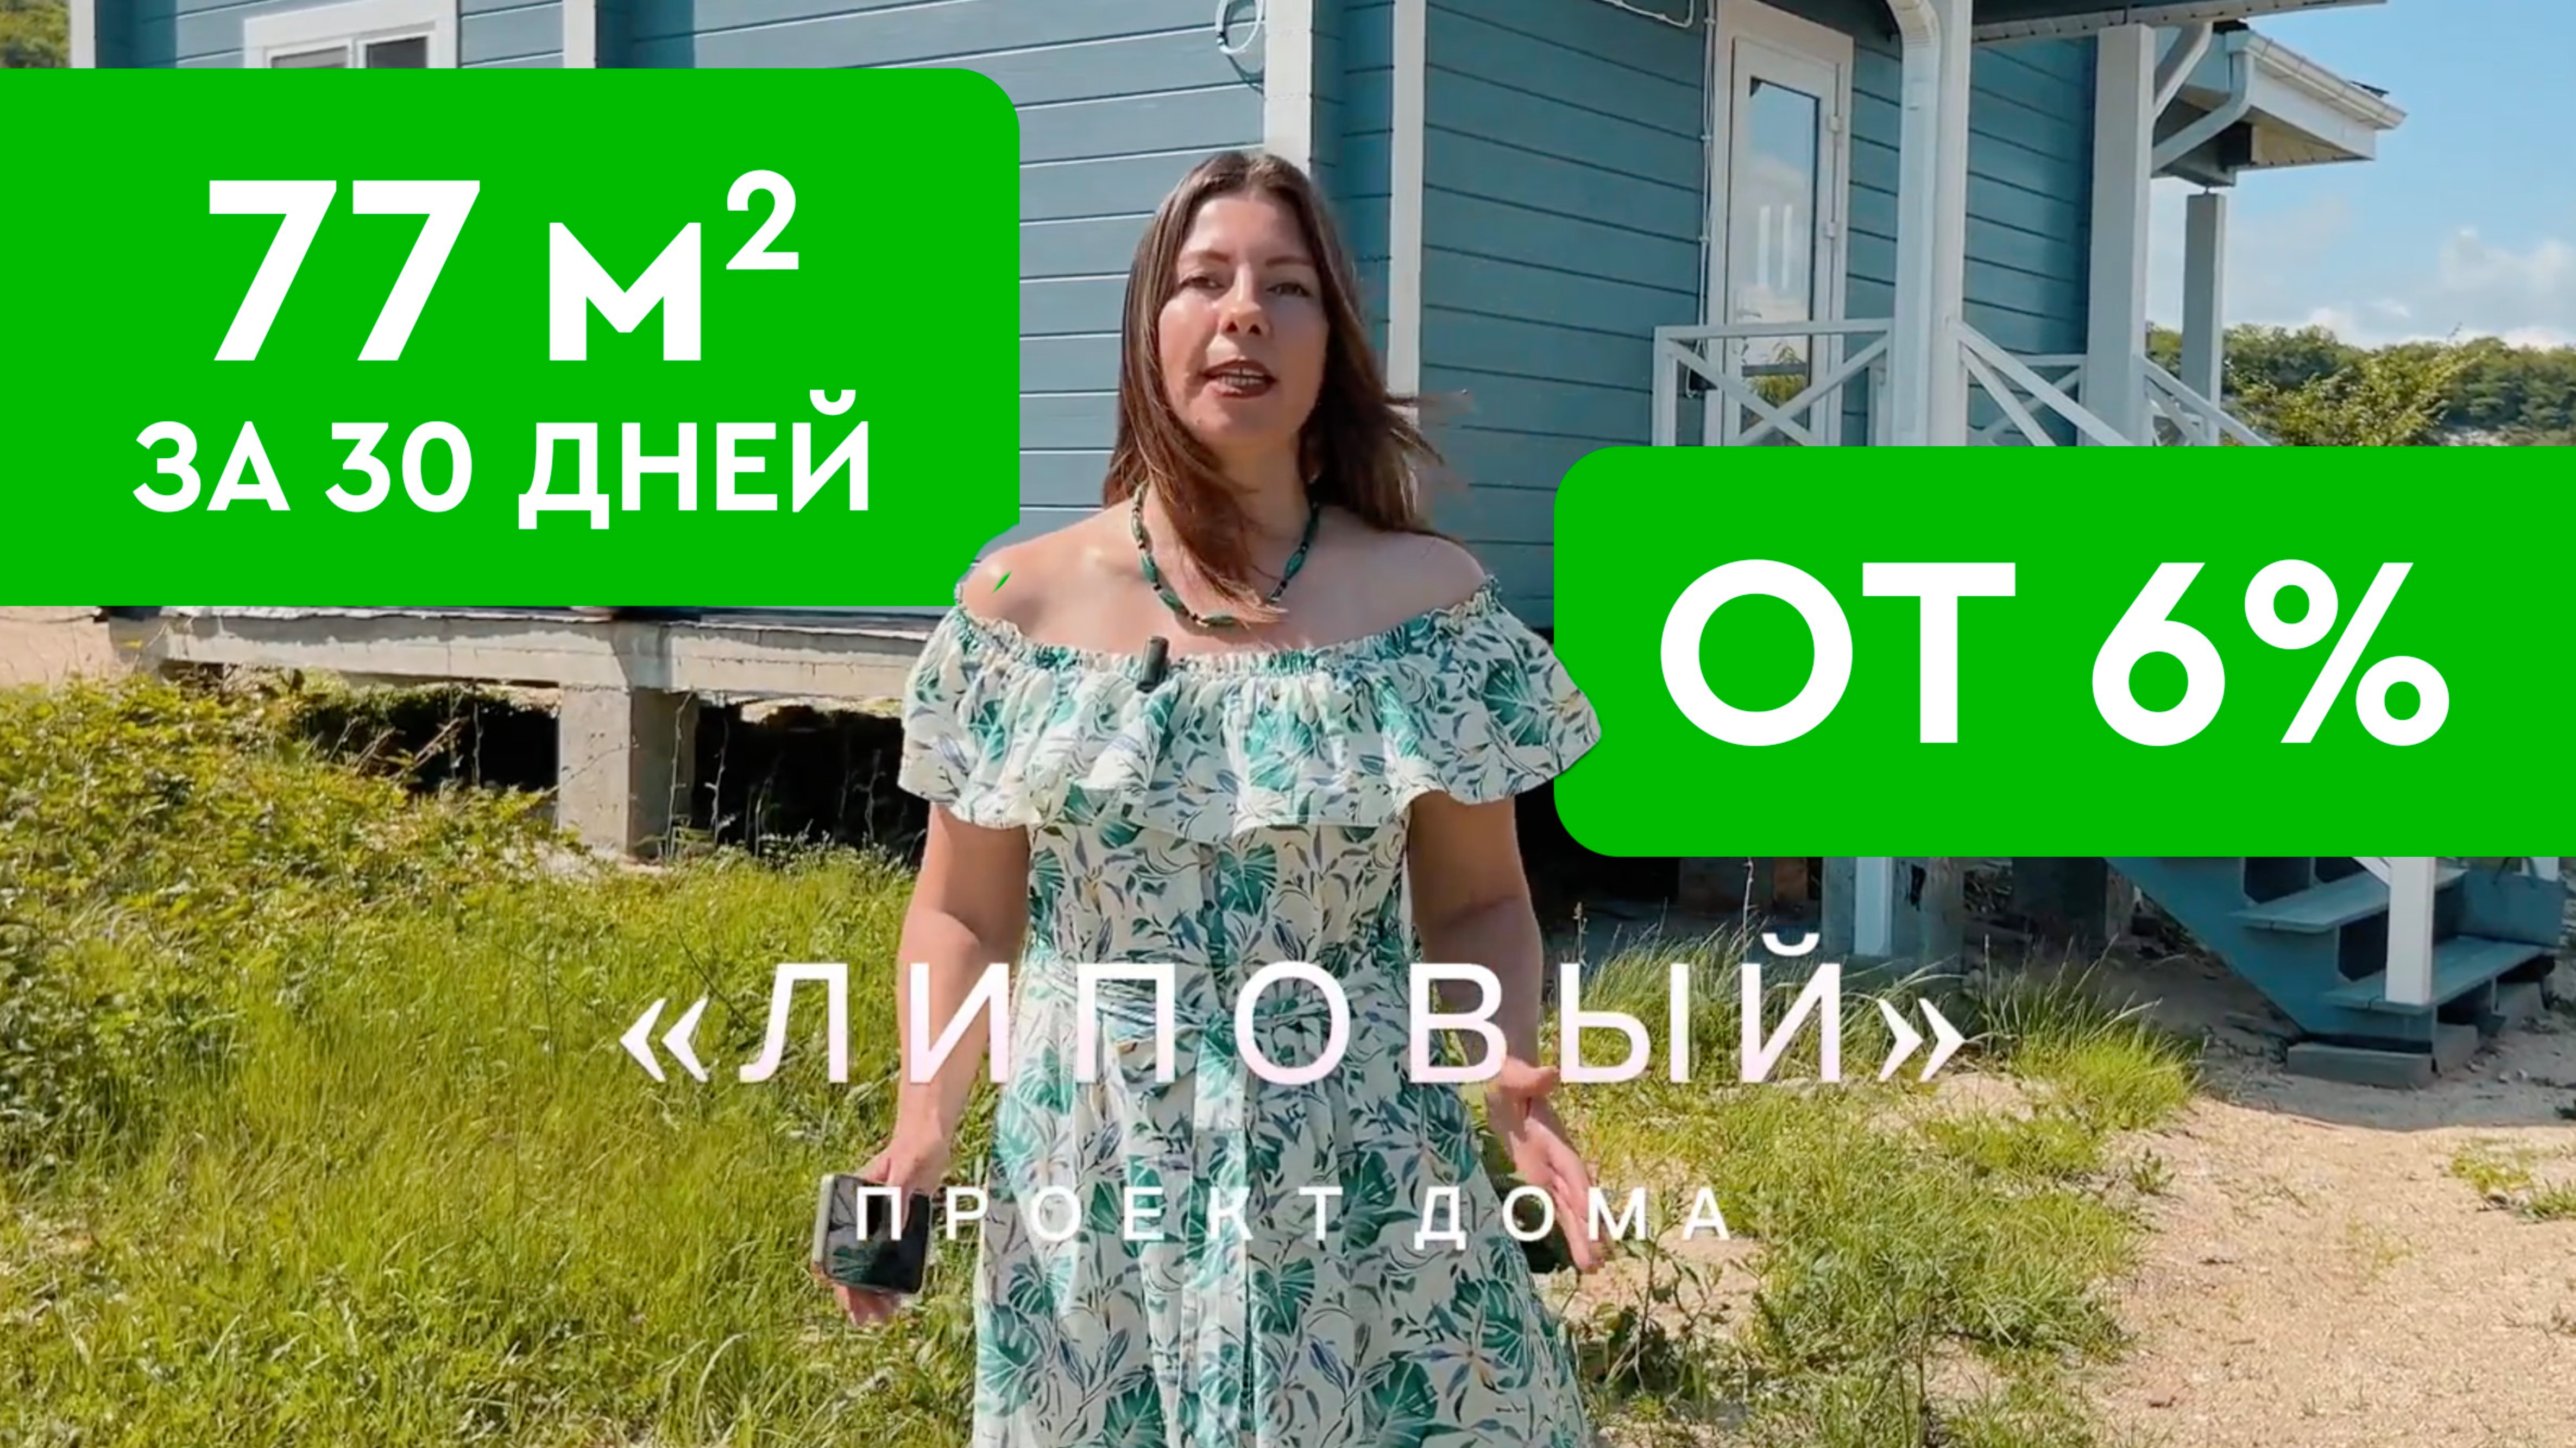 Обзор дома 77 м2 за 4,3 млн. рублей от СК "КЕДР"